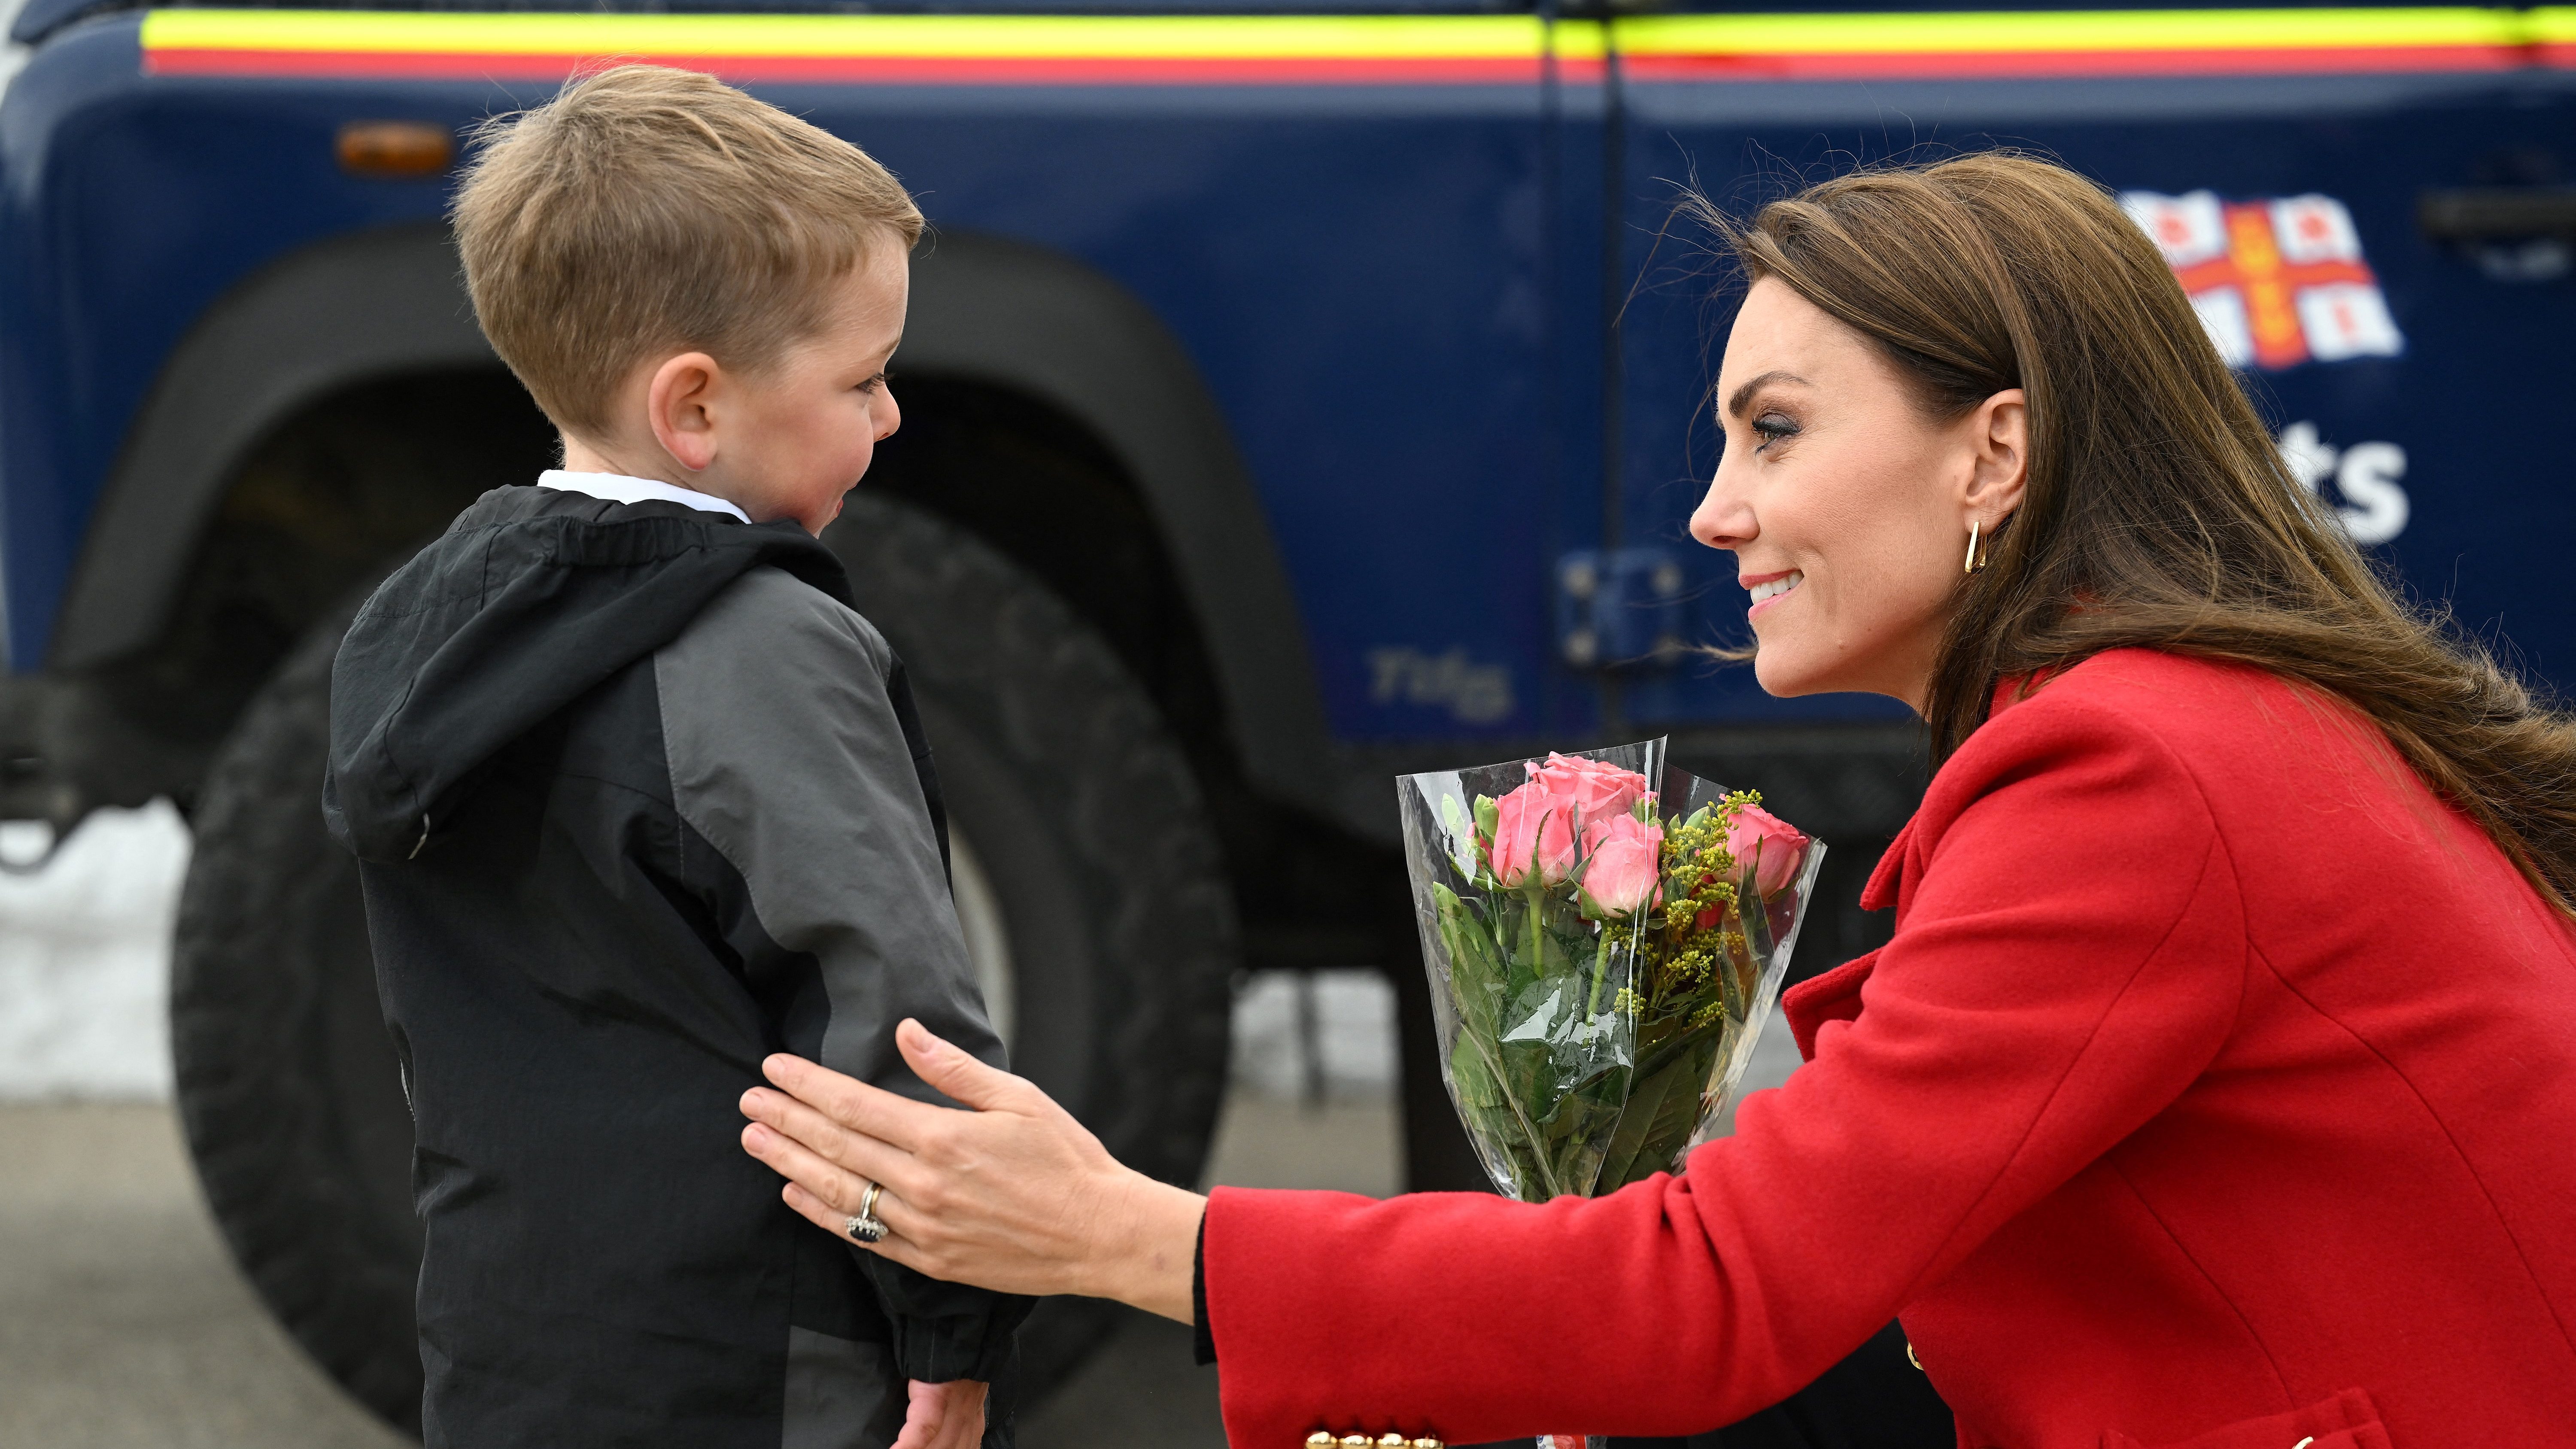 A Katalin hercegnével való találkozás dobta fel egy négyéves kisfiú napját